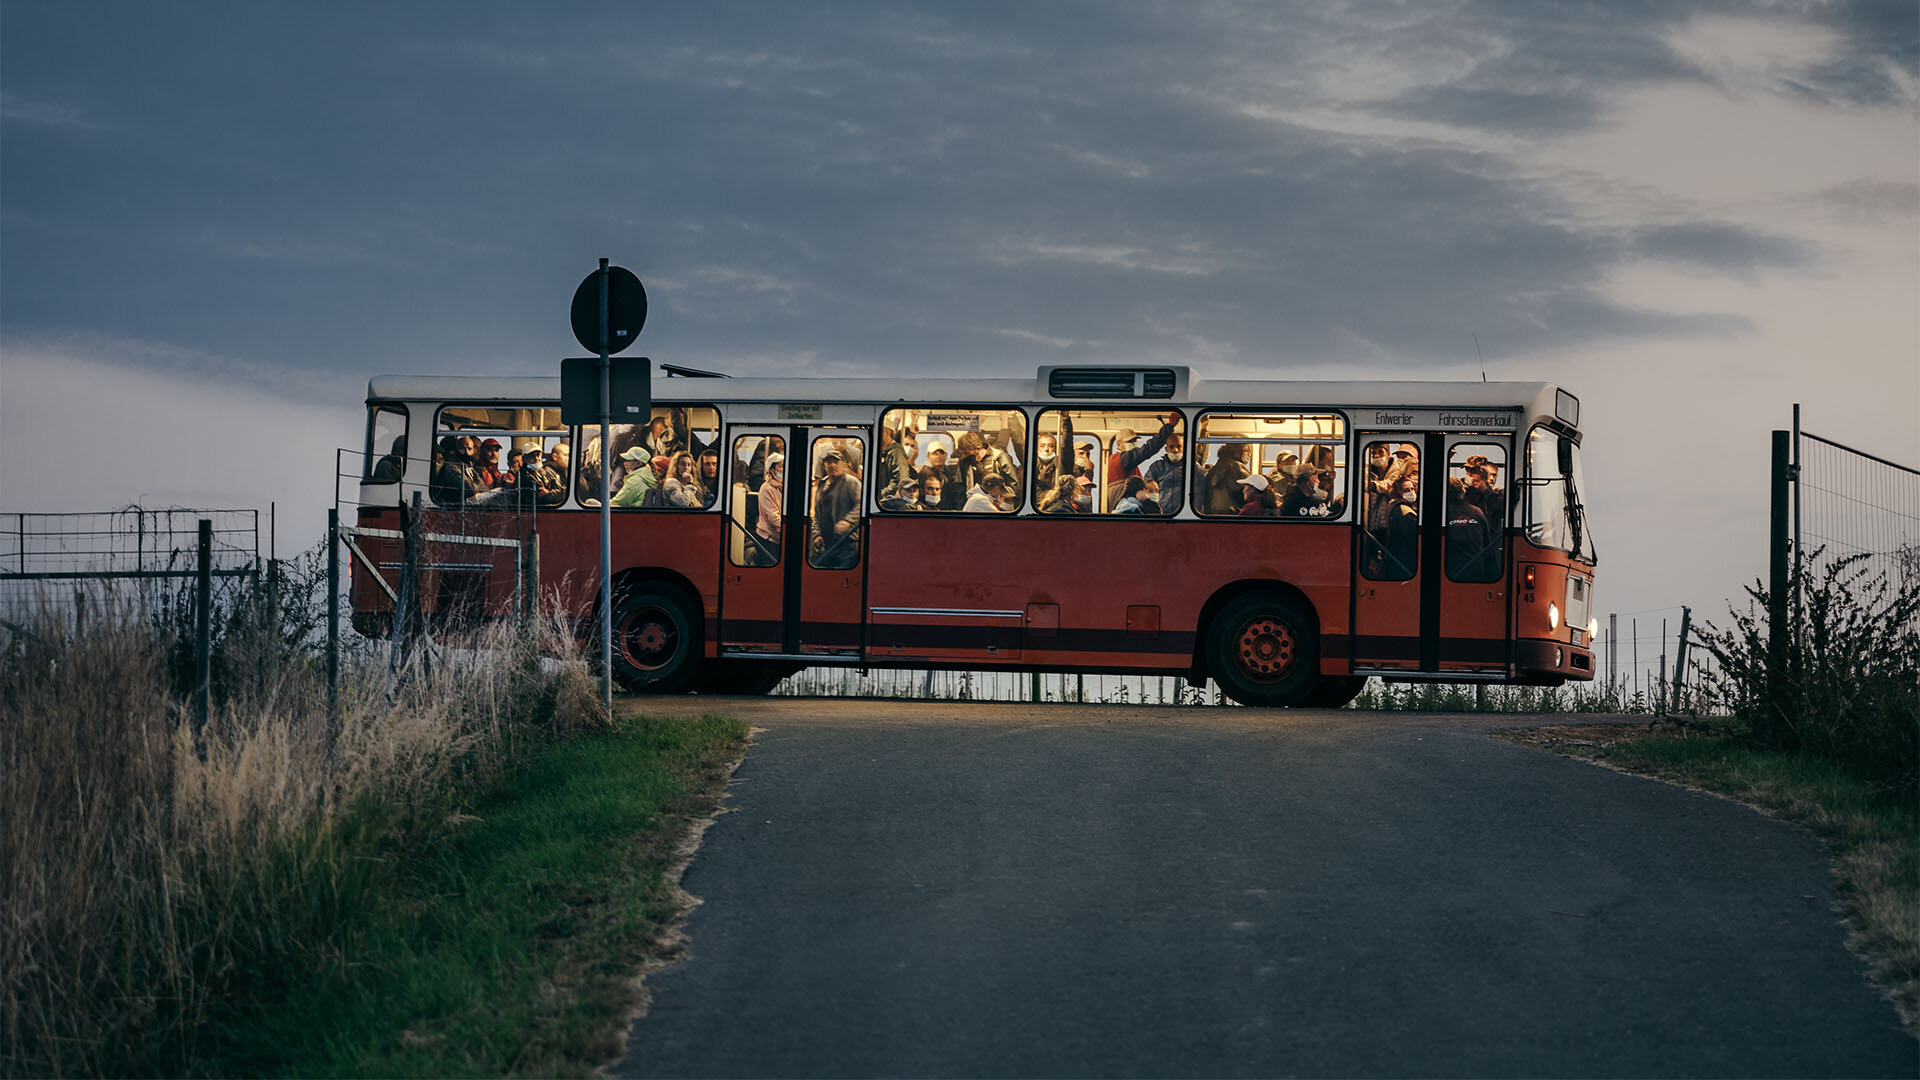 Arbeitskräfte kommen am frühen morgen mit einem alten Bus auf einer Apfelplantage in Sachsen an